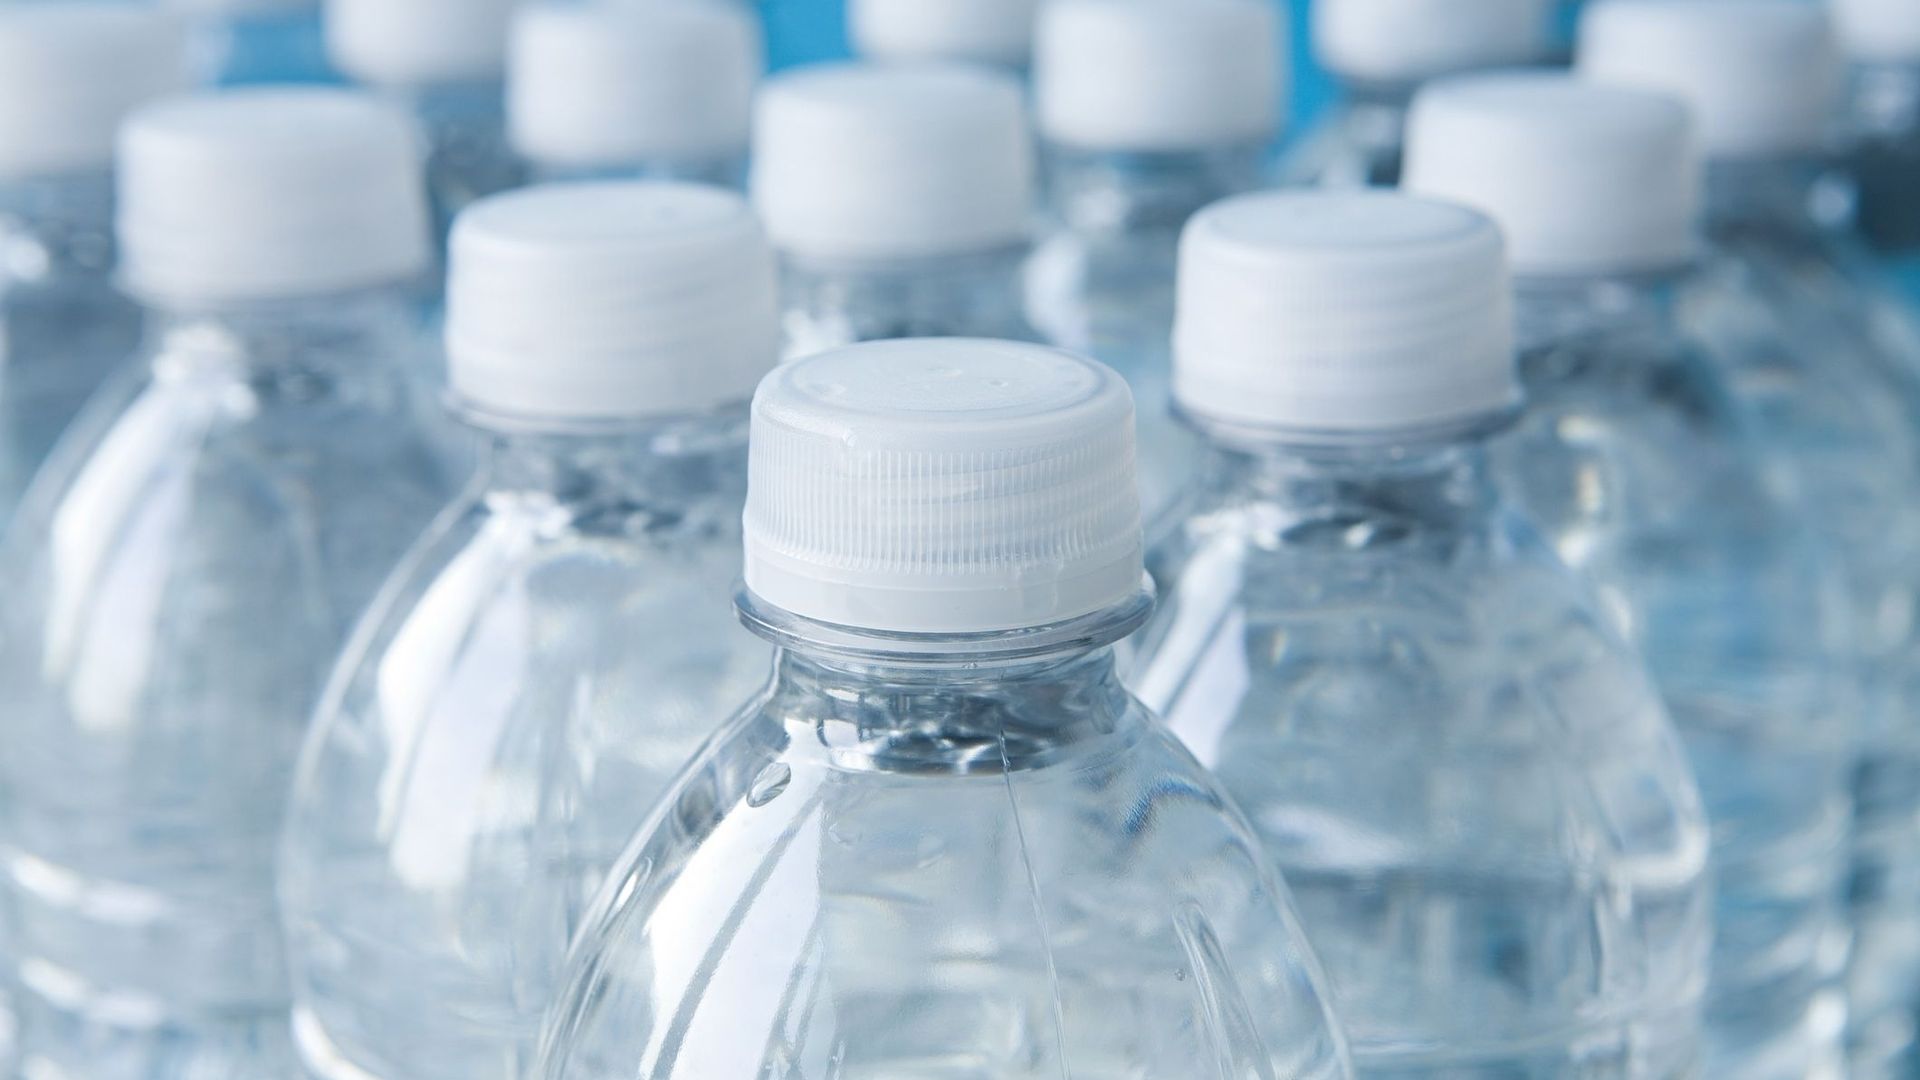 La moitié des ventes d'eau en bouteille suffirait à fournir de l'eau potable à tous, selon l'ONU.